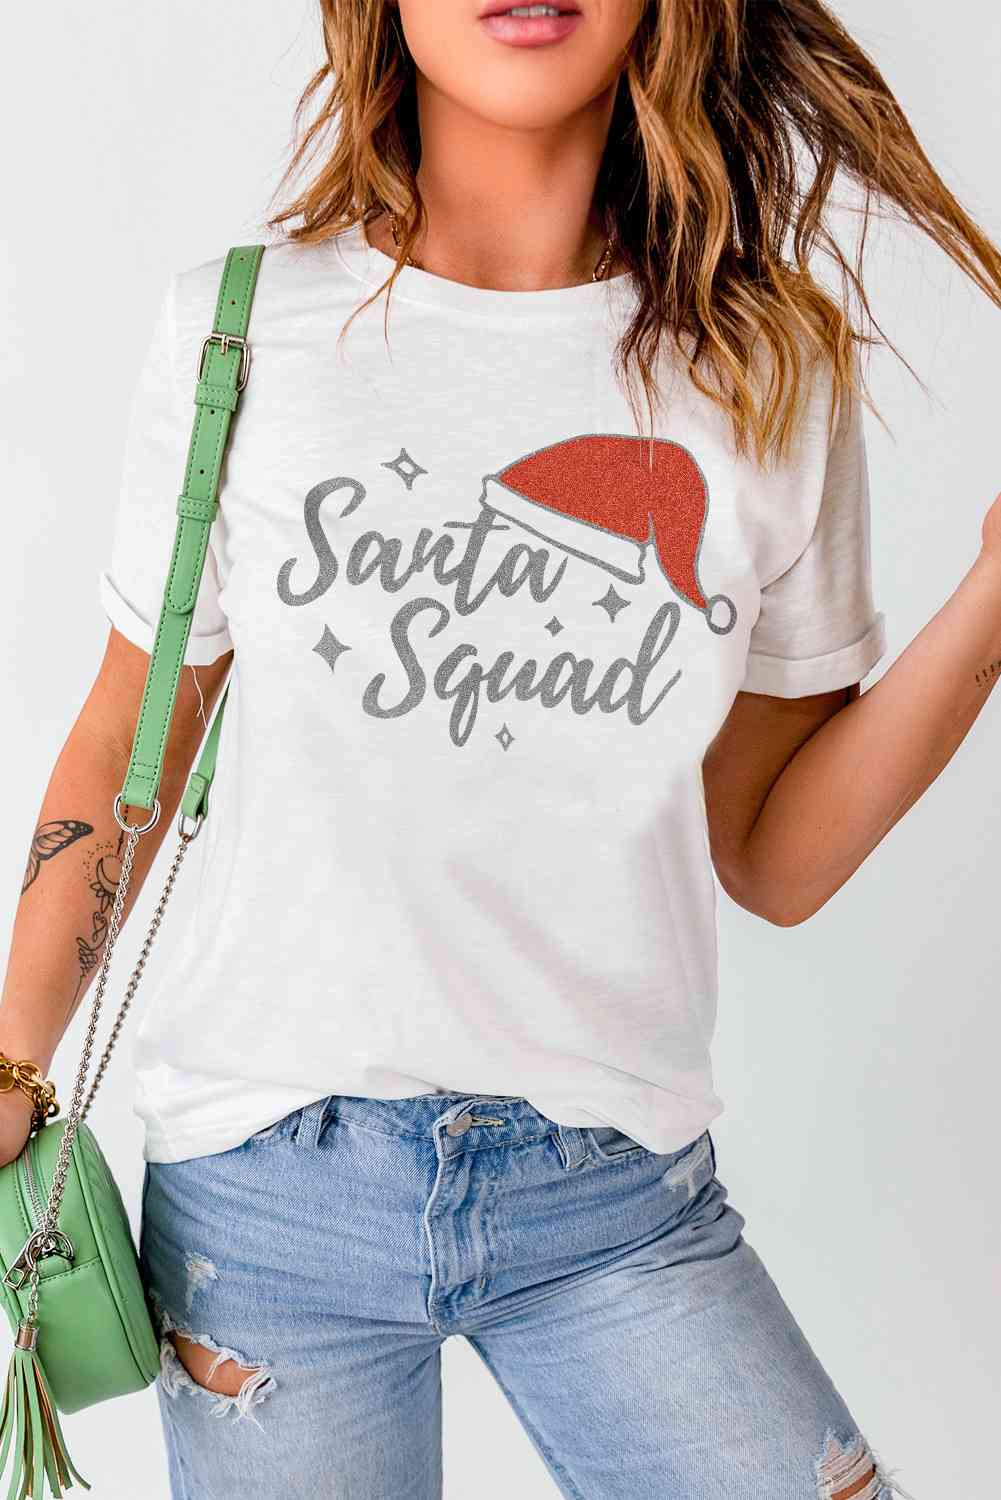 SANTA SQUAD Graphic Short Sleeve T-Shirt | Sugarz Chique Boutique